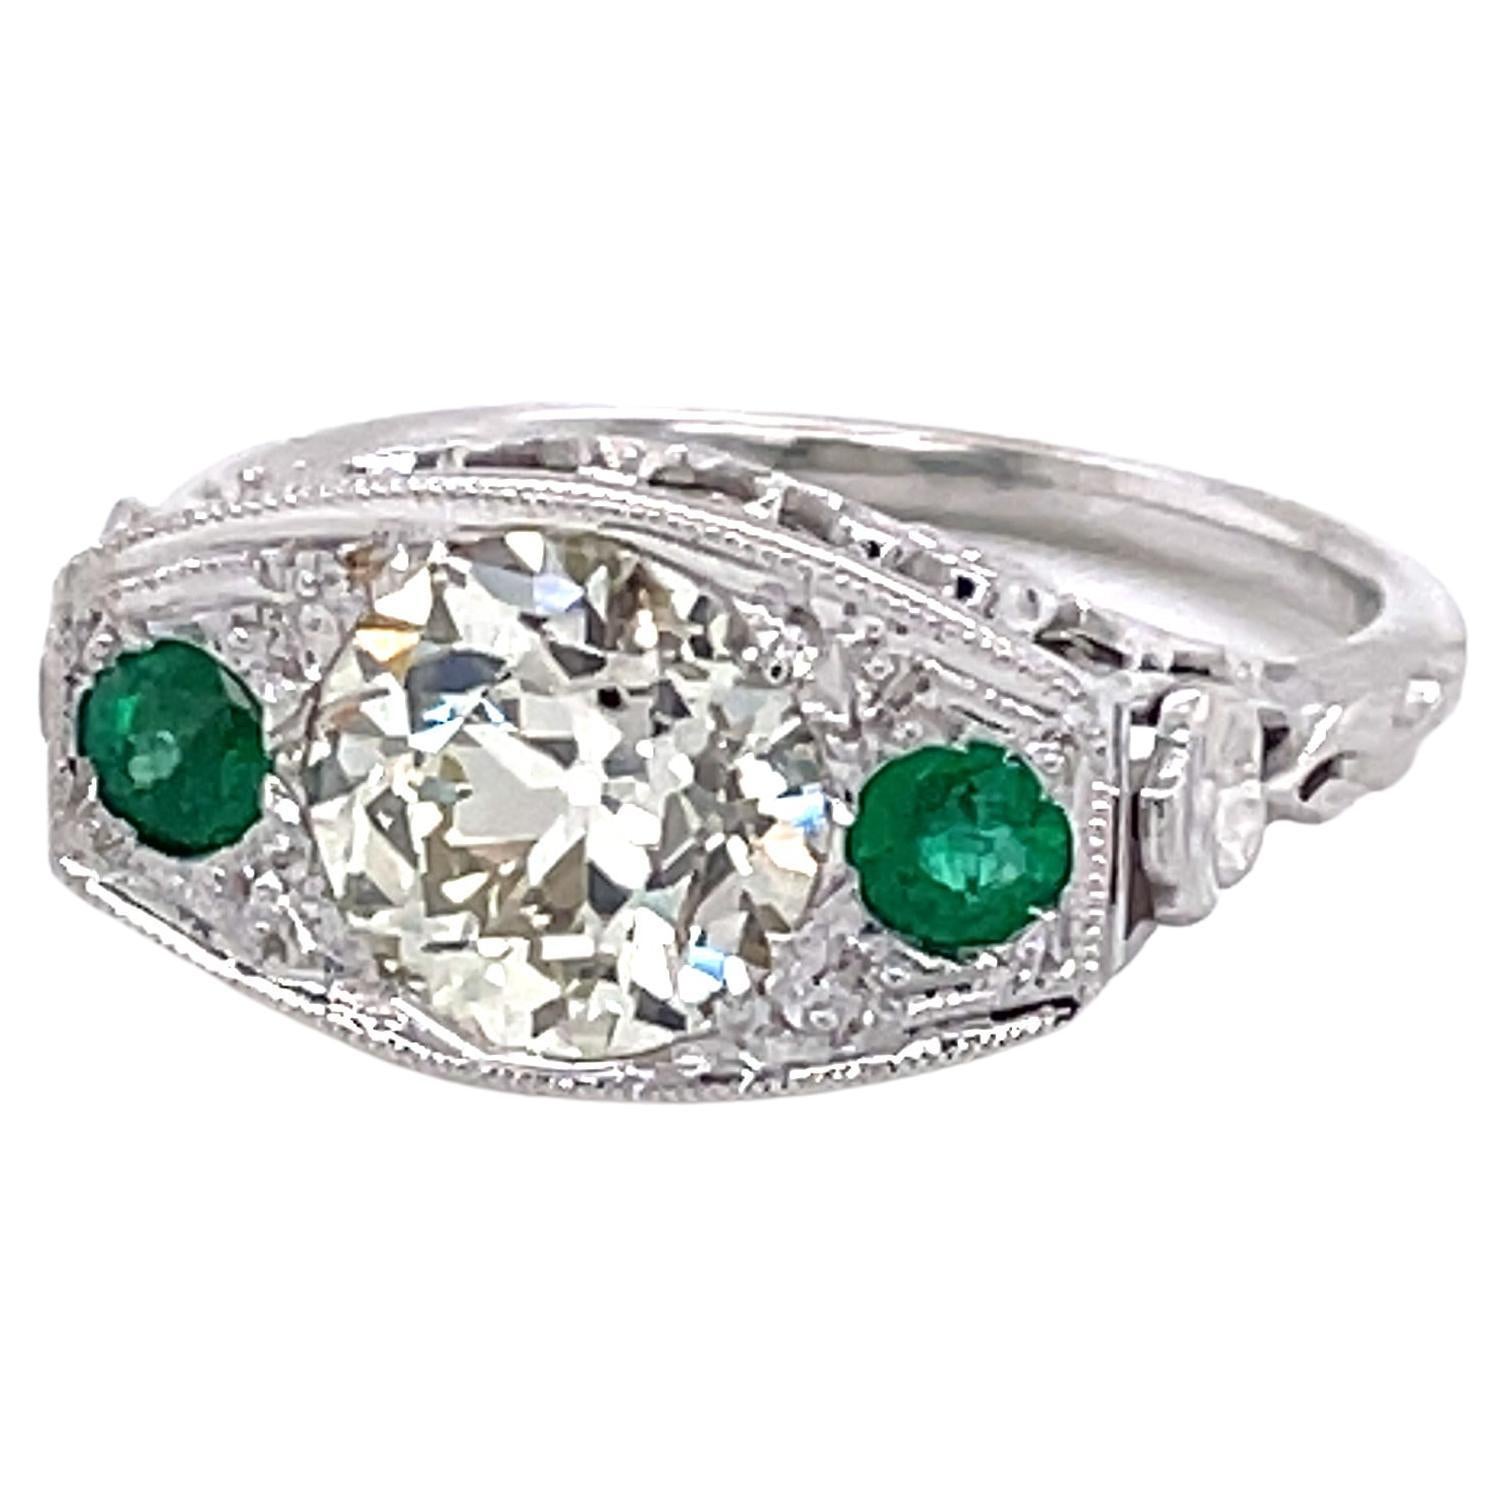 Antique Edwardian Diamond Emerald 18 Karat White Gold Filigree Ring